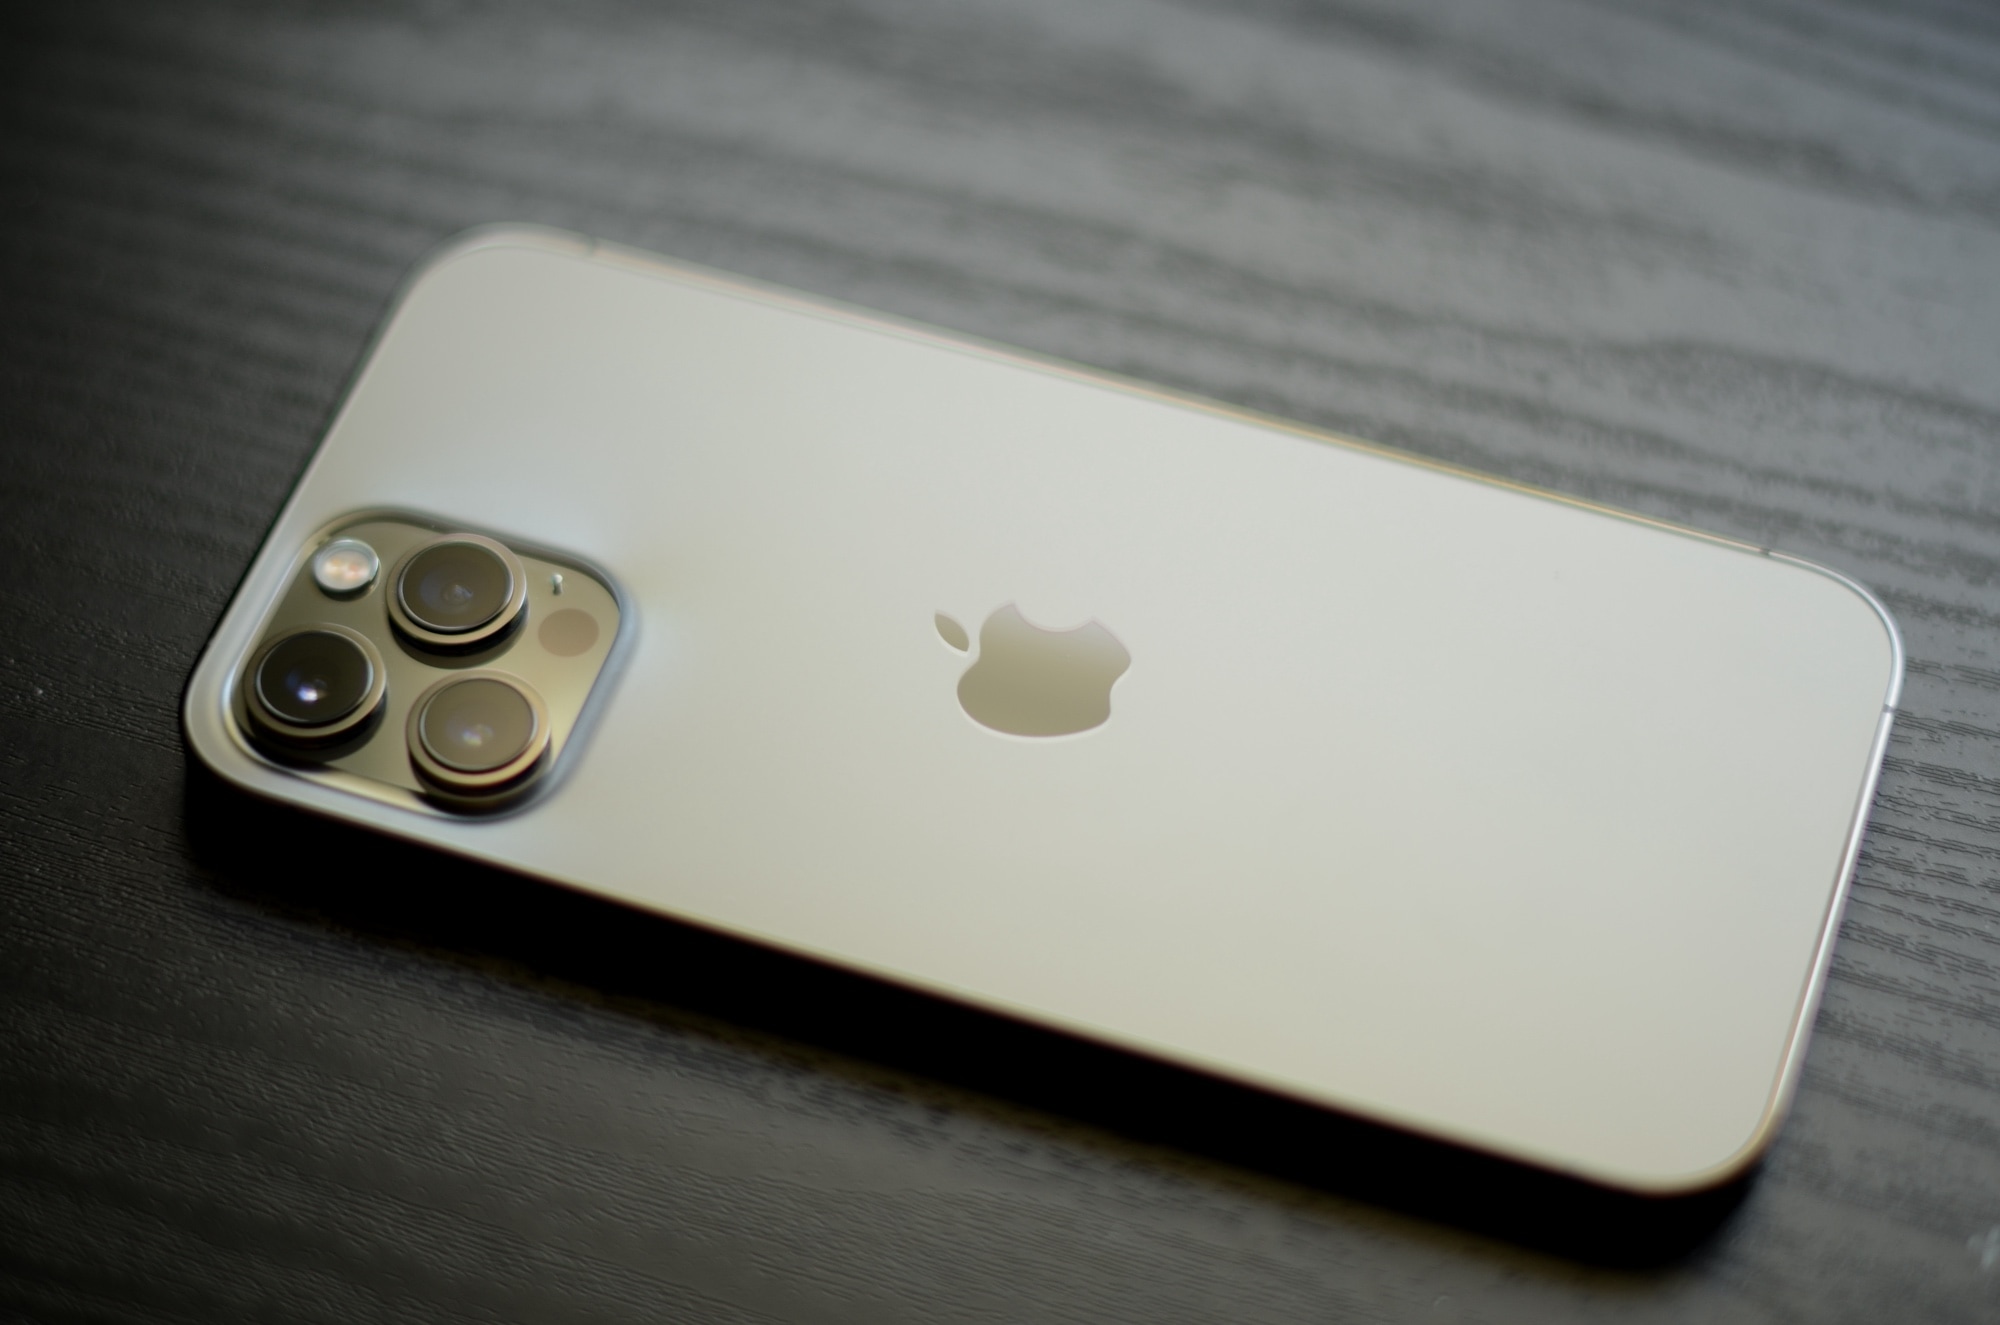 Một chiếc iPhone 12 Pro Max màu vàng được đặt úp xuống bàn gỗ